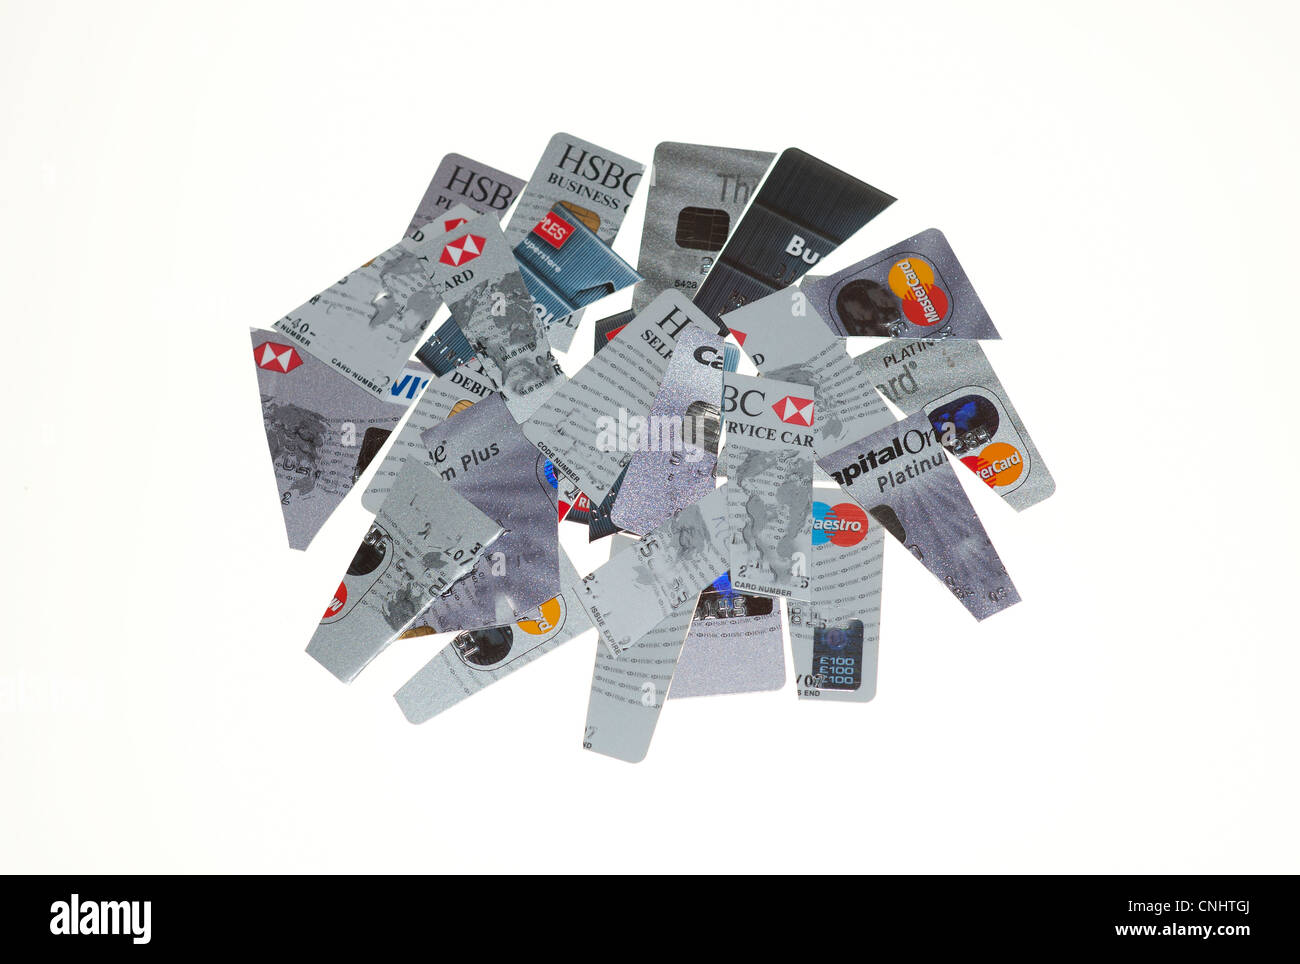 Tagliare le carte di credito per ridurre il debito. I nomi e i dettagli del conto prelevato in Photo-Shop per la sicurezza. Foto Stock